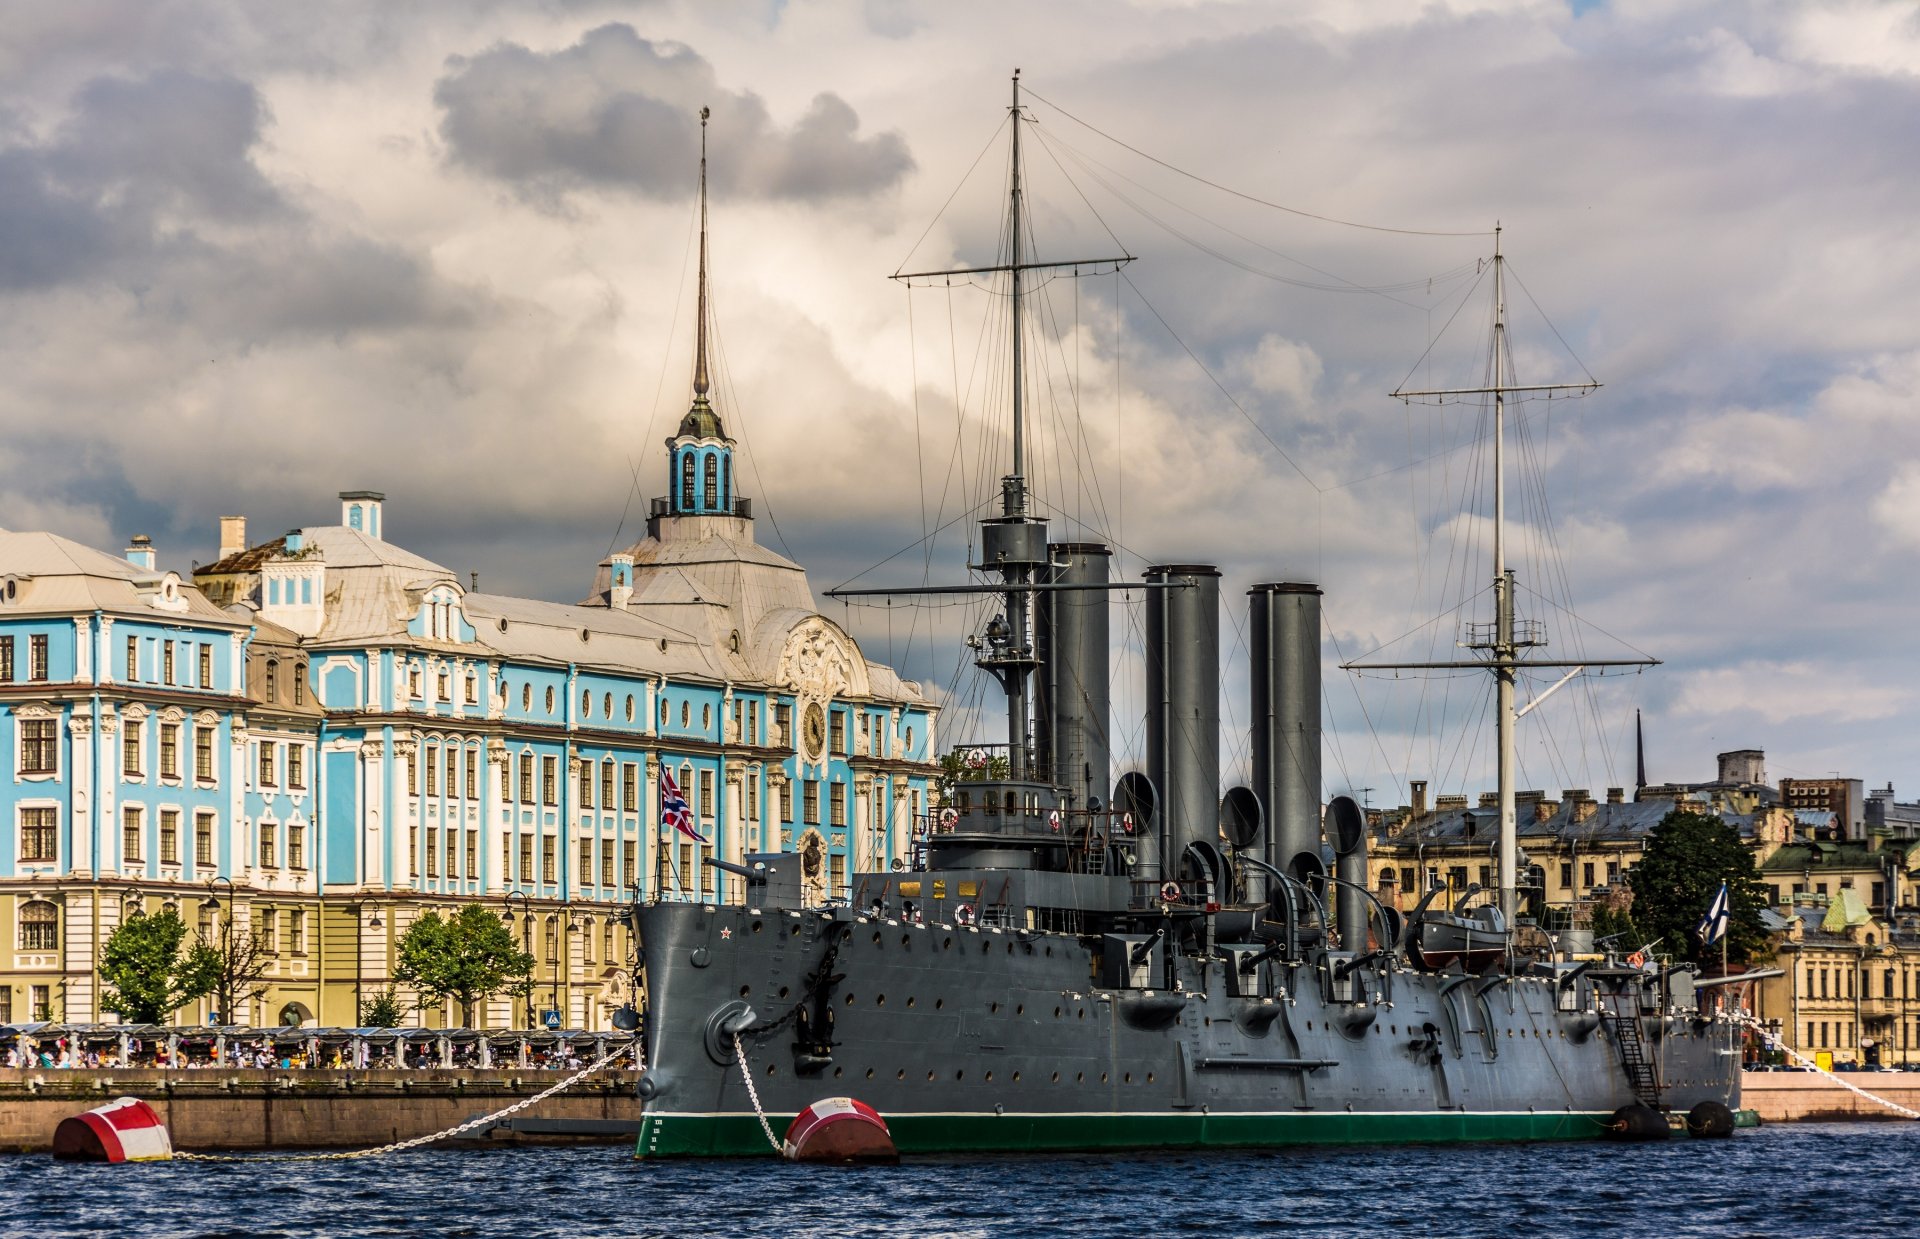 санкт-петербург крейсер аврора крейсер аврора нахимовское военно-морское училище петроградская набережная большая невка река набережная музей здание